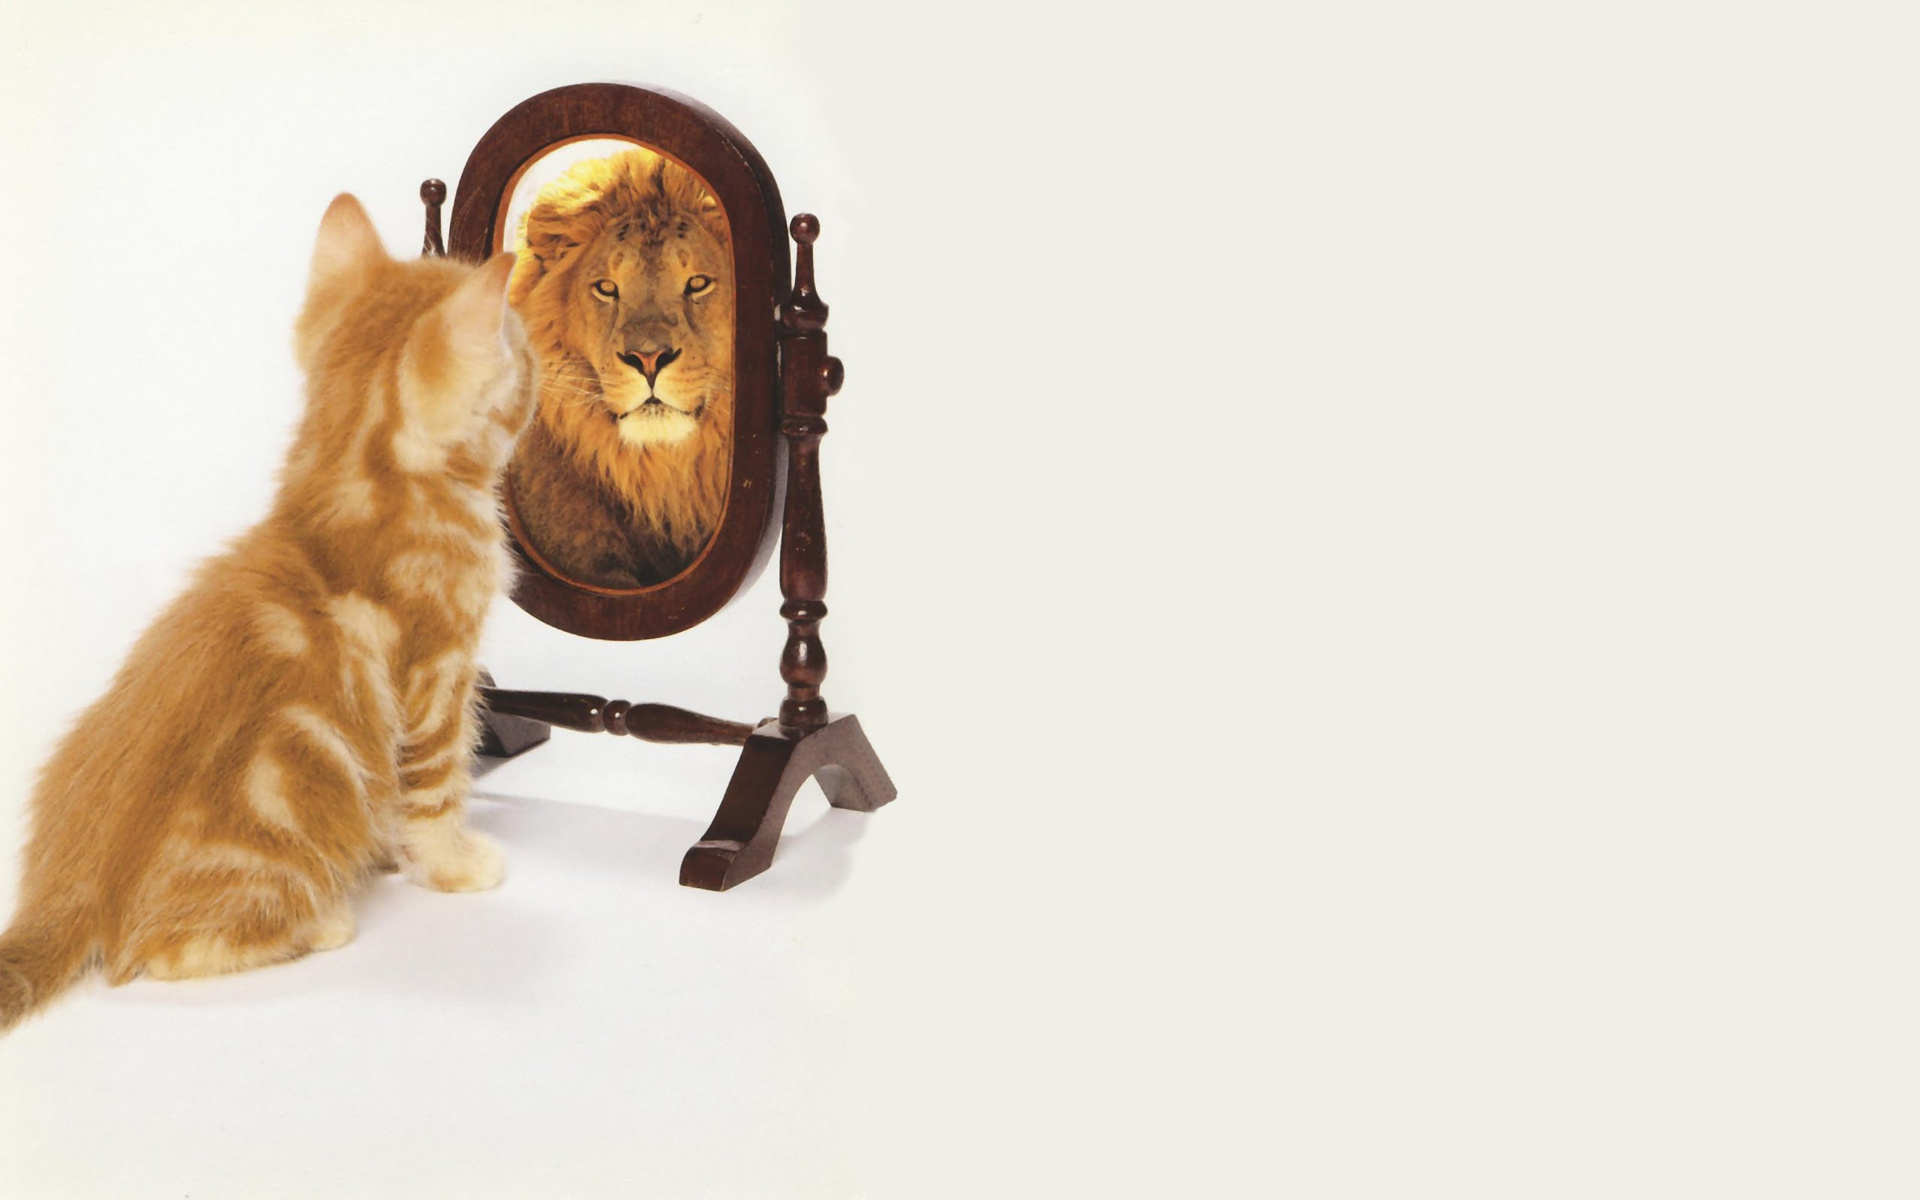 mirror-cat-lion.jpg